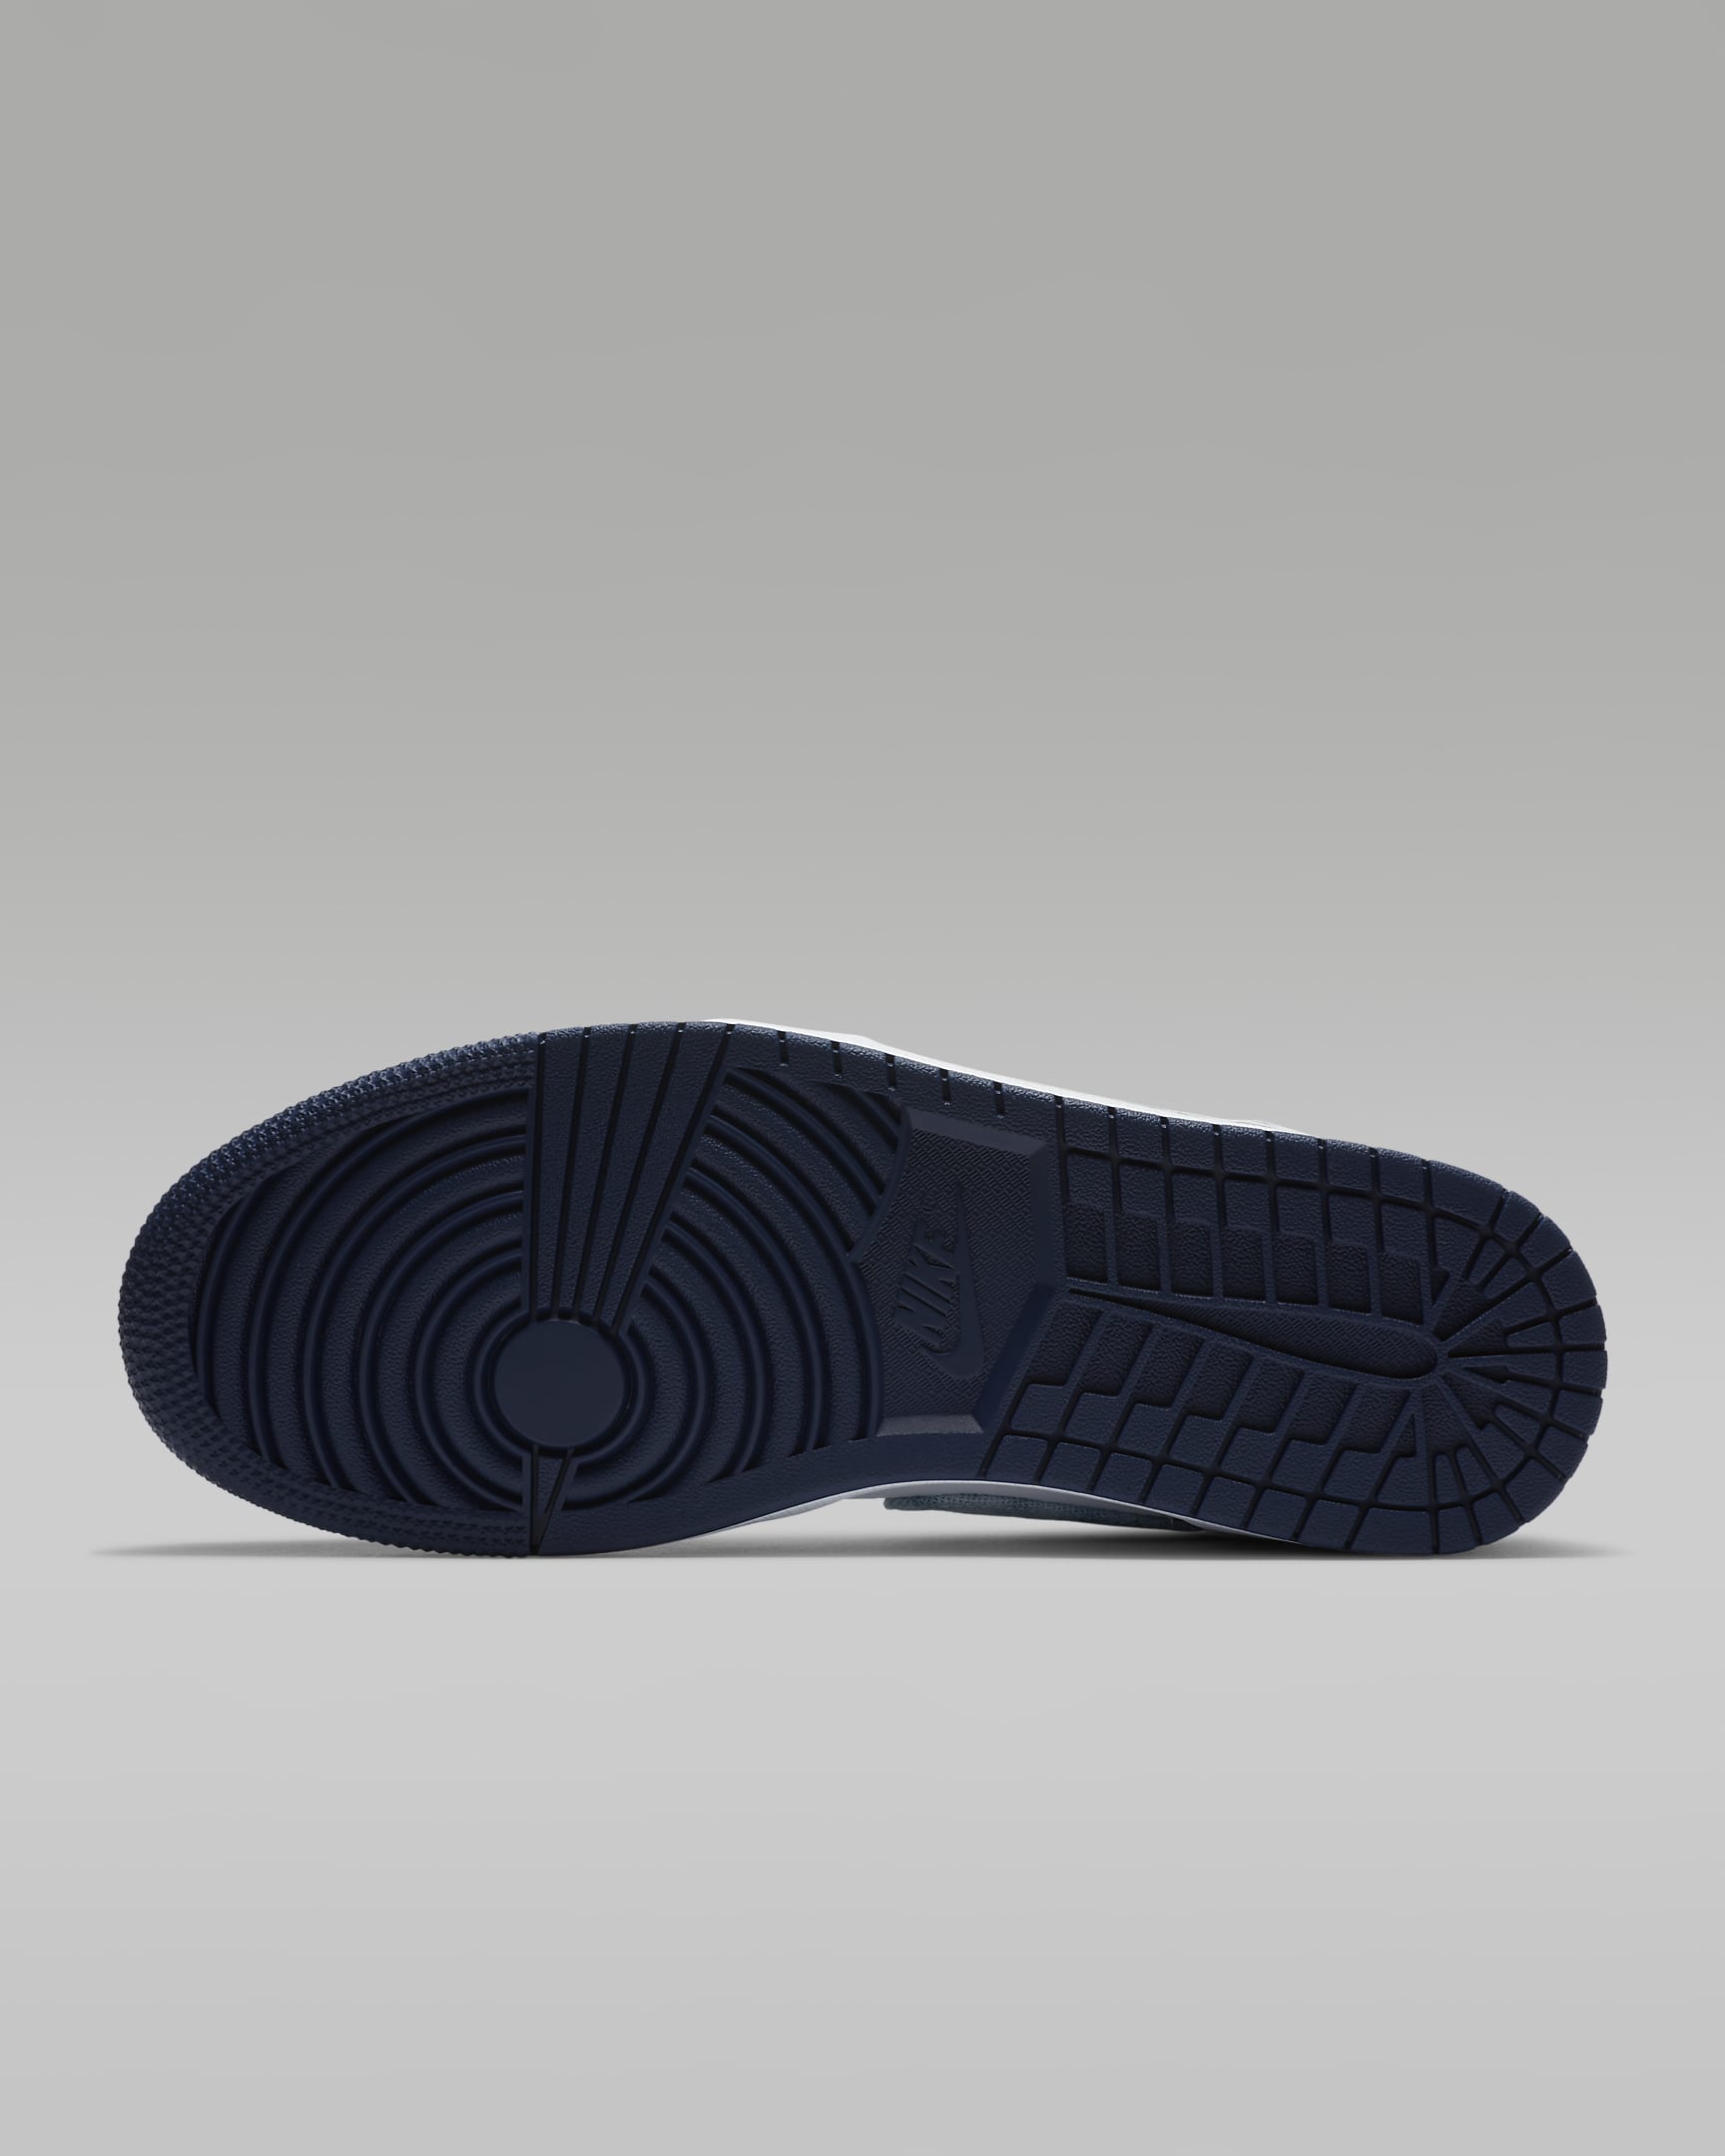 Air Jordan 1 Low SE Men's Shoes. Nike HR